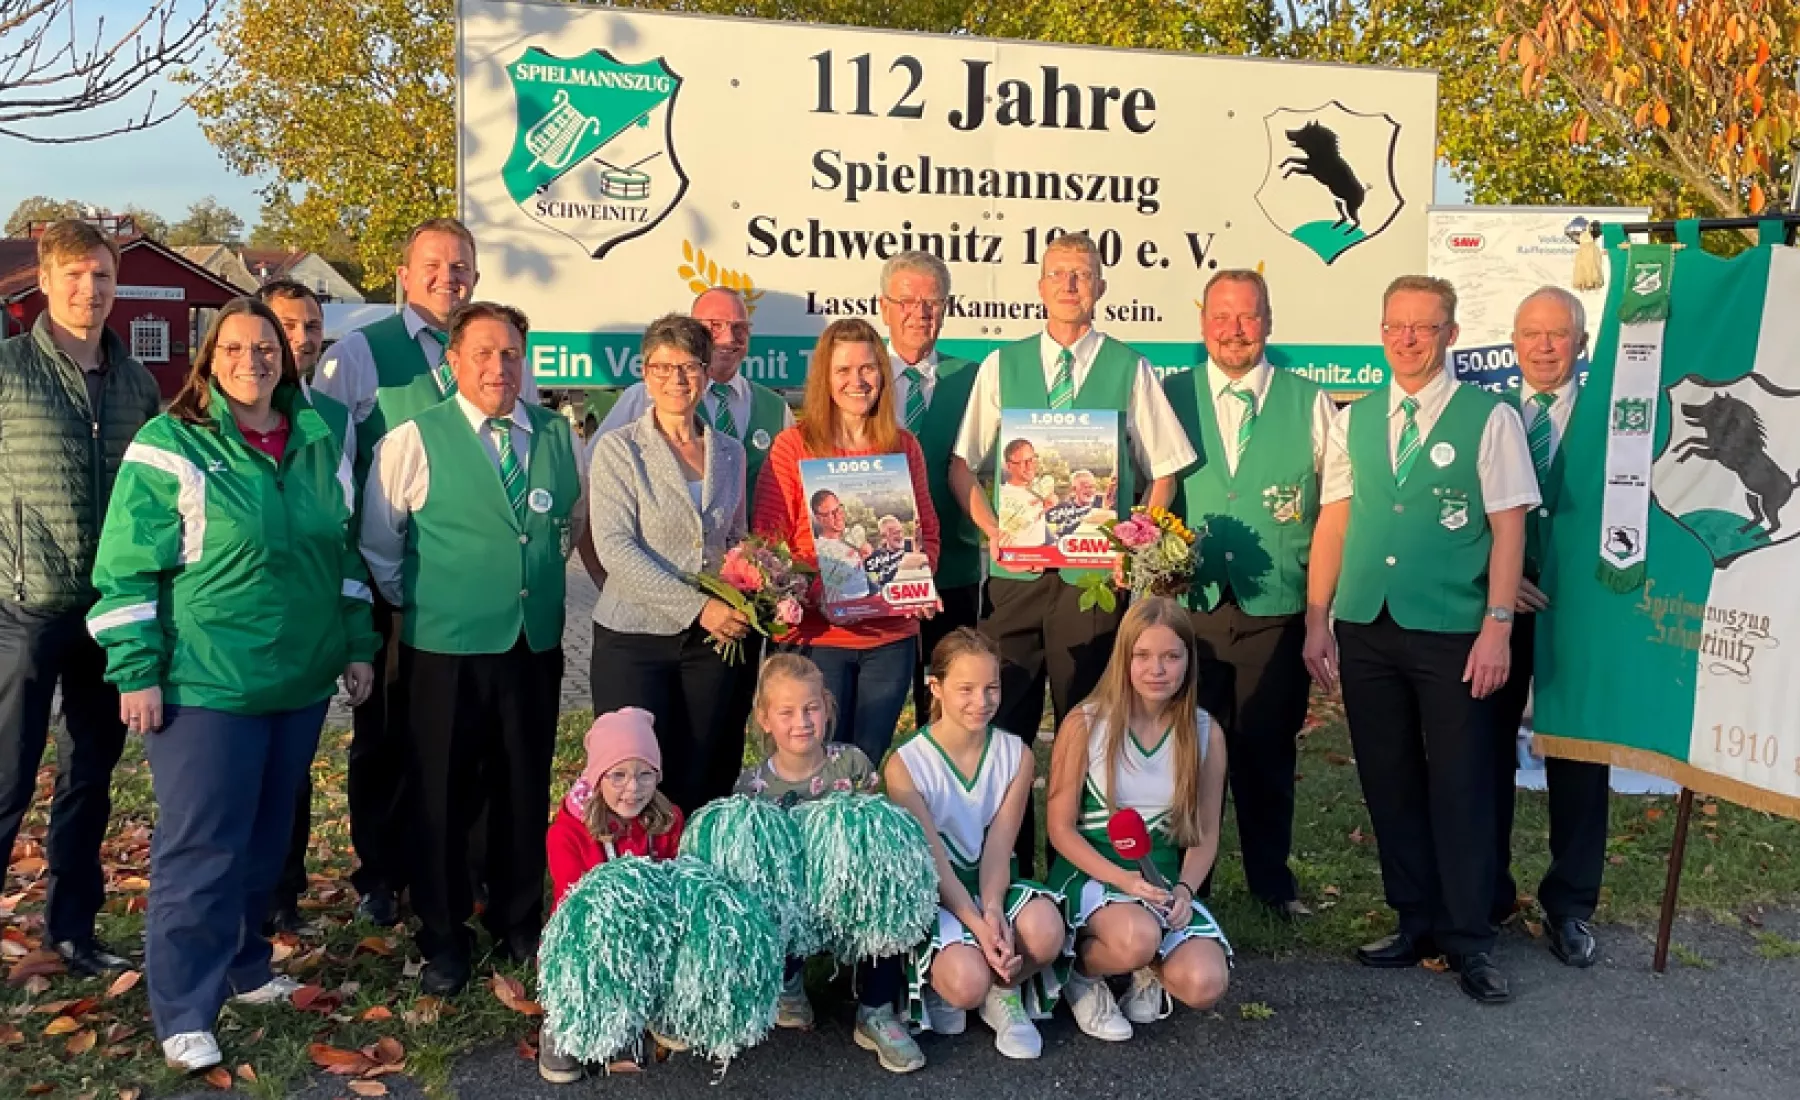 1.000 Euro Gewinner: Spielmannszug Schweinitz